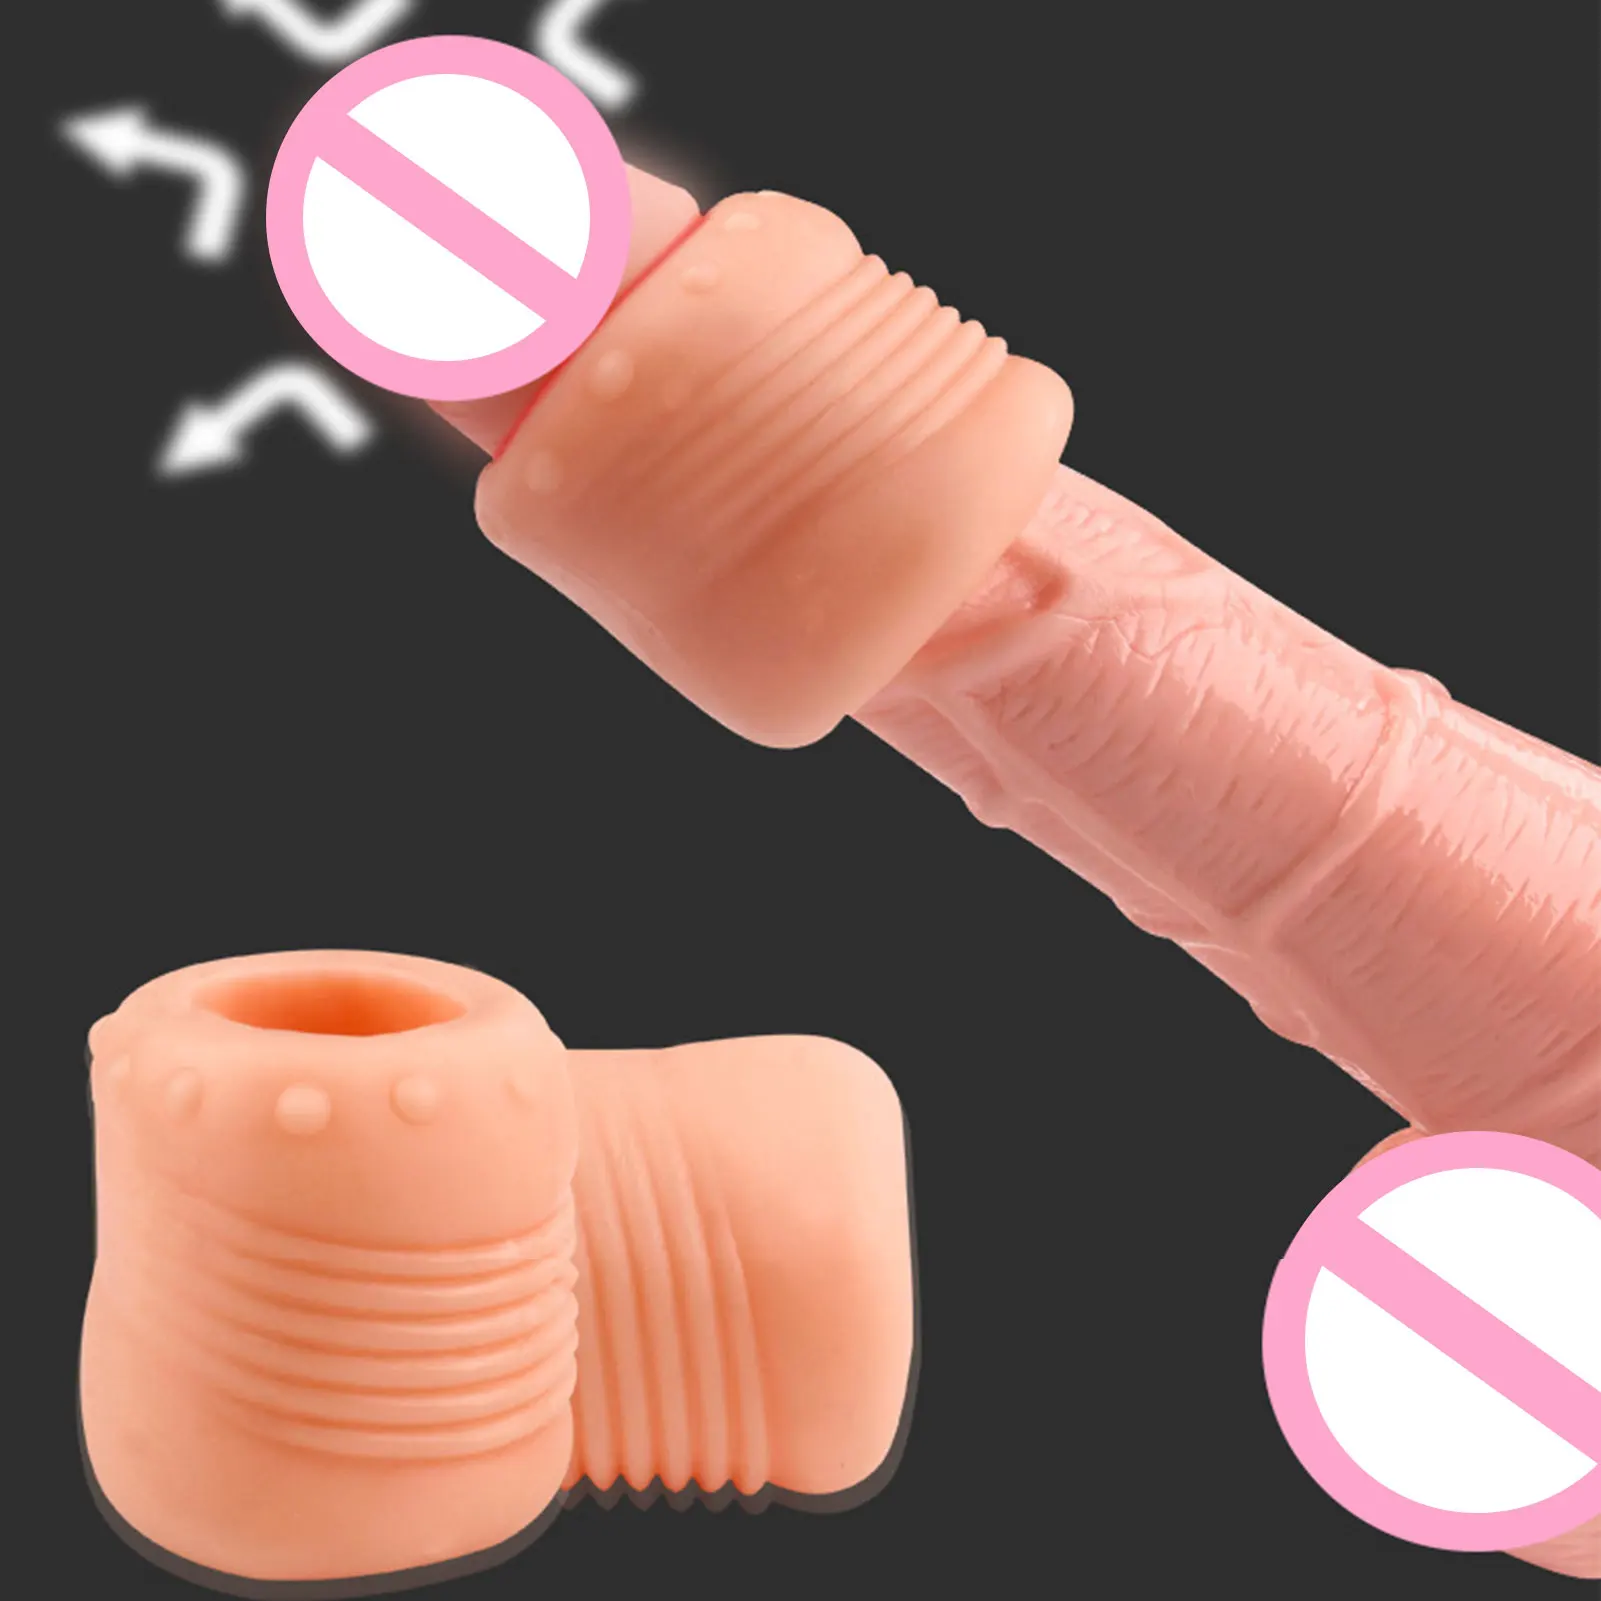 

Кольцо на пенис для увеличения пениса, секс-игрушки для мужчин, 18 + корректор Foreskin, Блокировка пениса, задержка эякуляции спермы, интимные изделия для взрослых